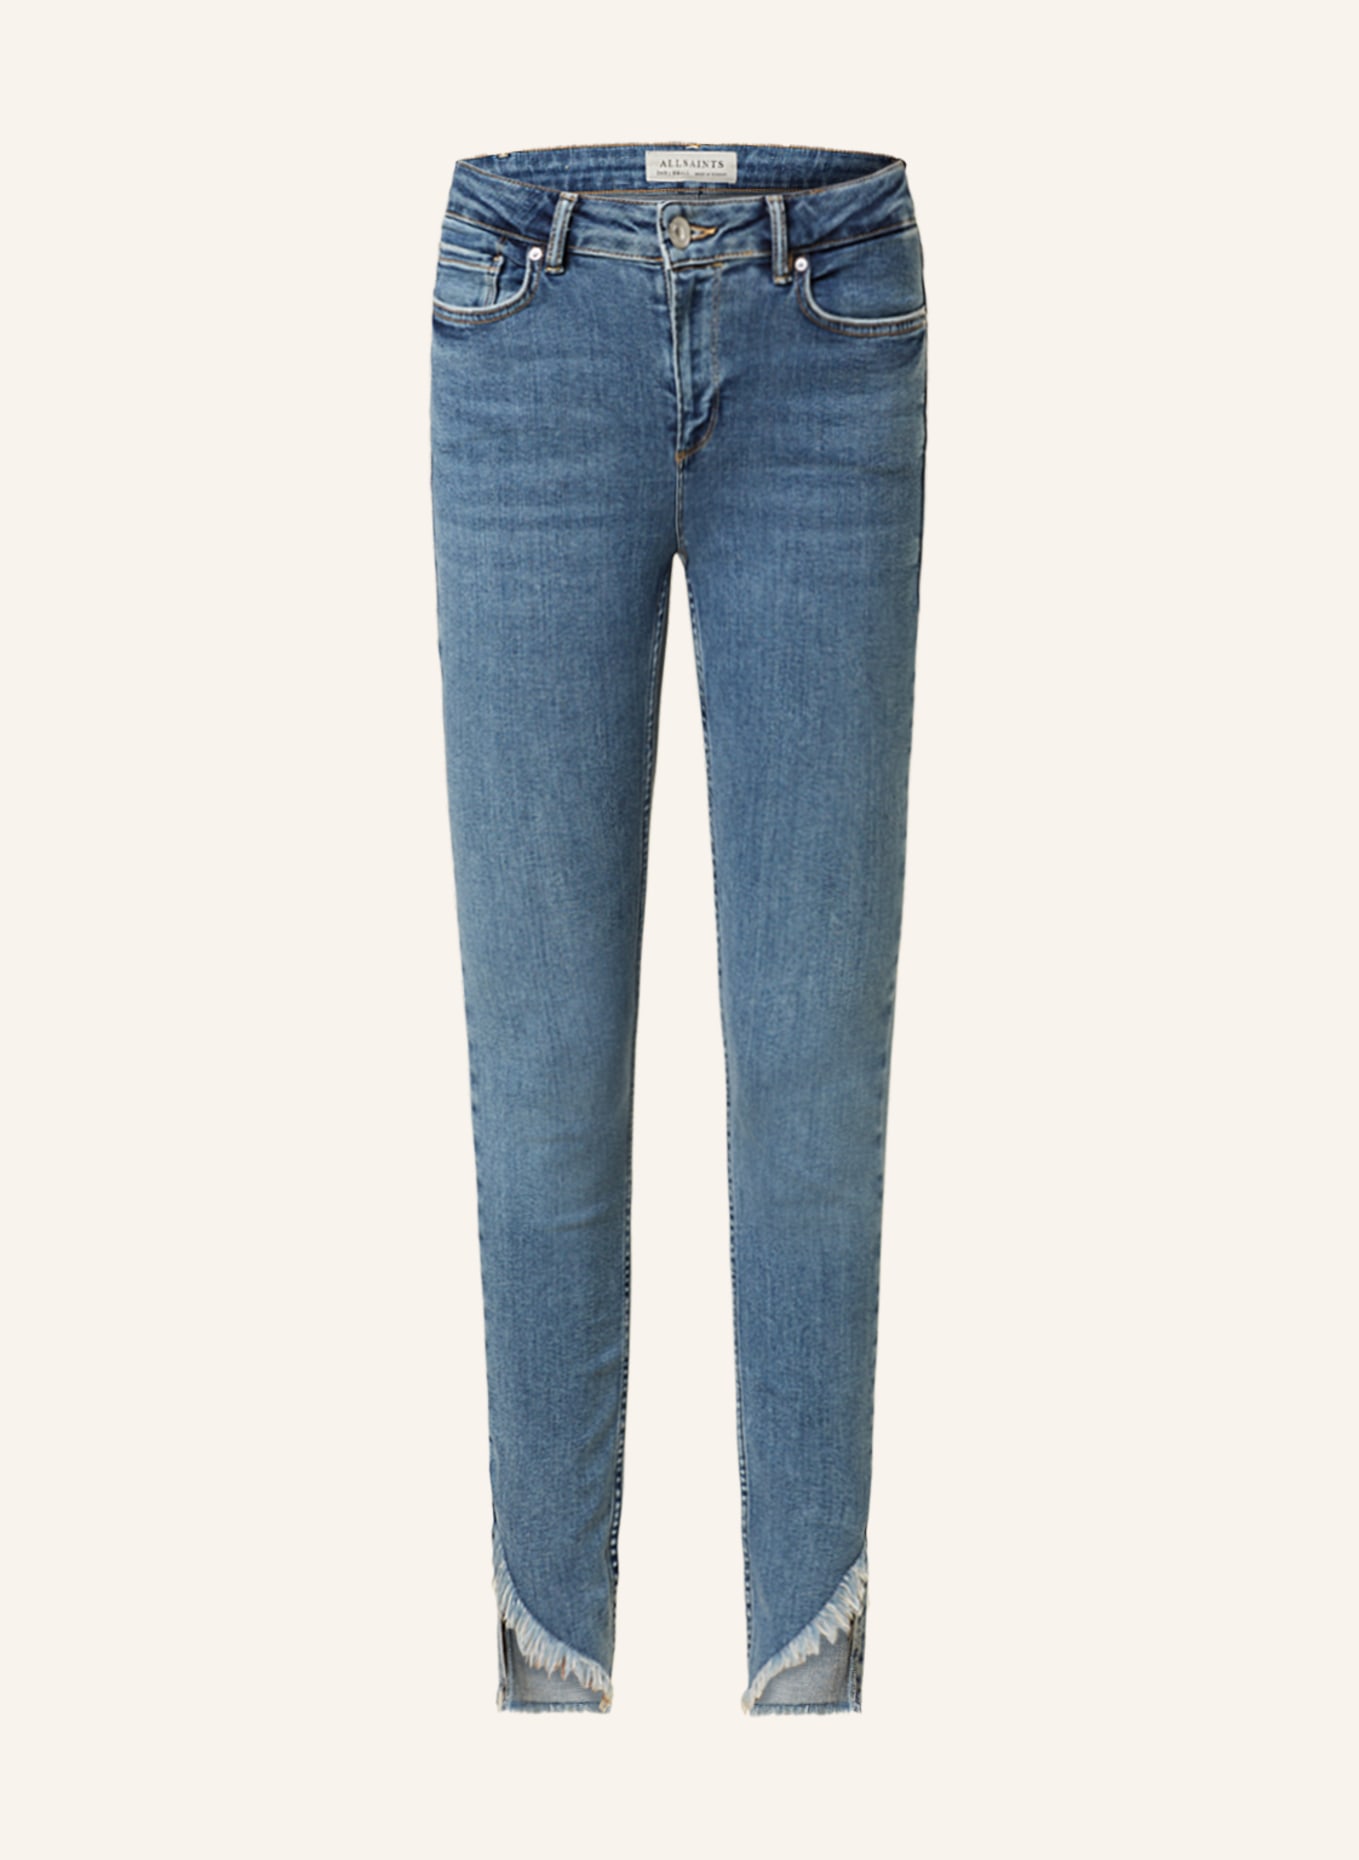 ALLSAINTS Skinny Jeans DAX, Farbe: 6328 HUNTER BLUE (Bild 1)